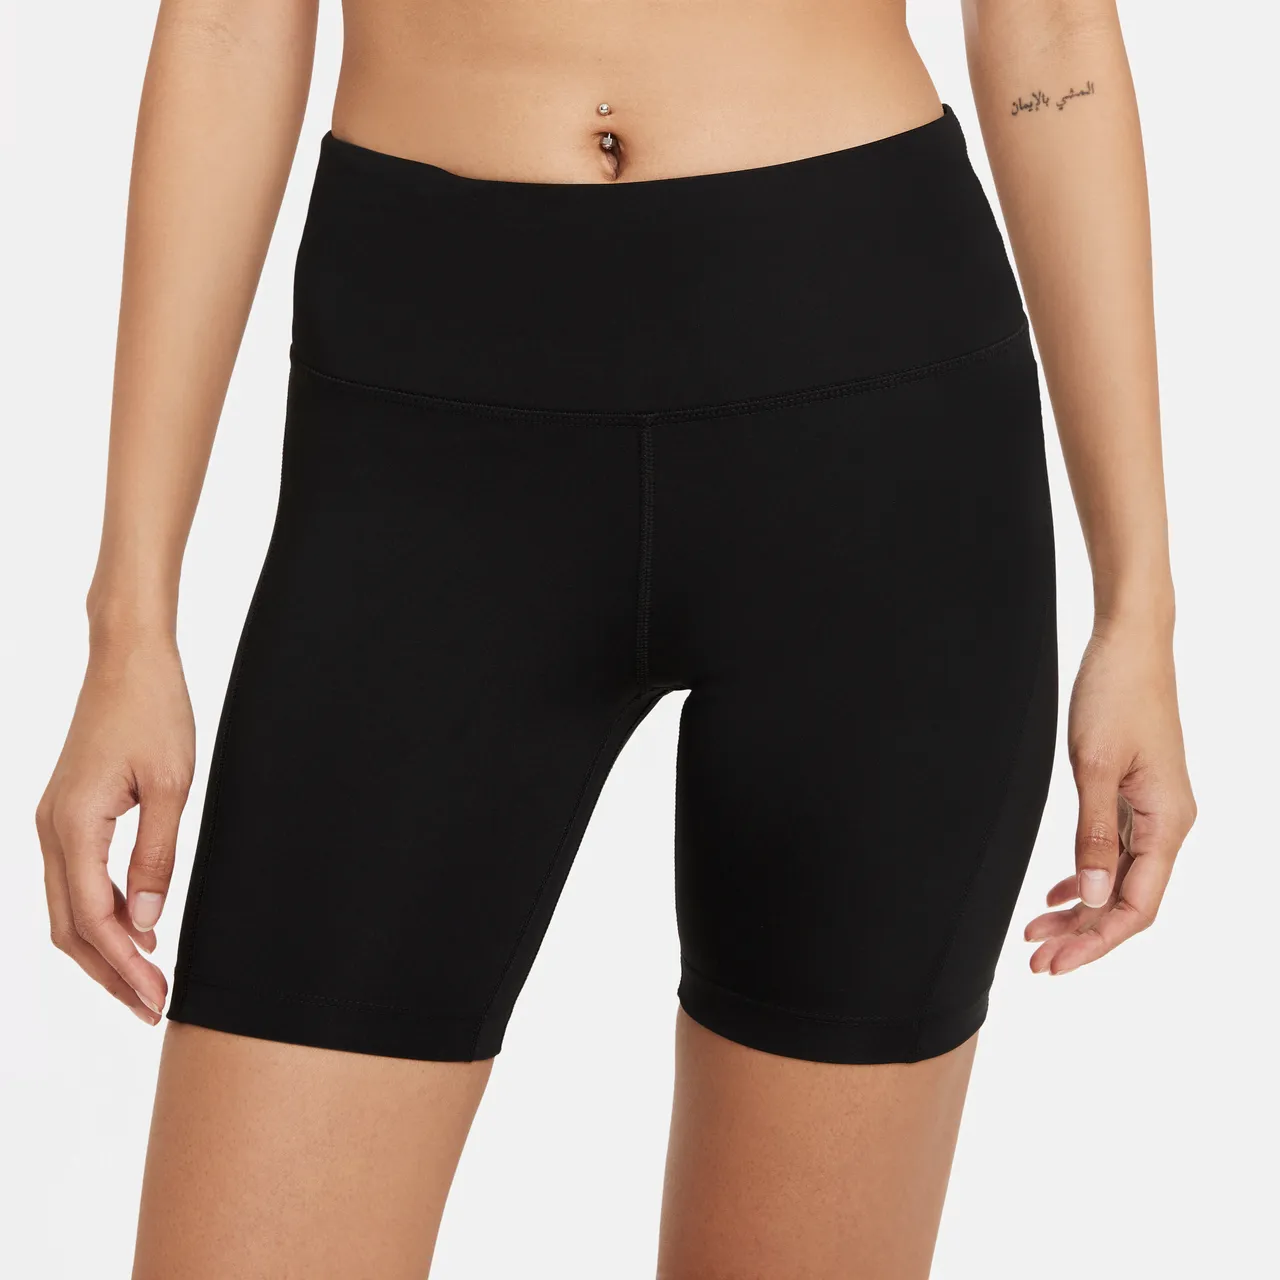 Nike Fast Hardloopshorts met halfhoge taille voor dames (18 cm) - Zwart